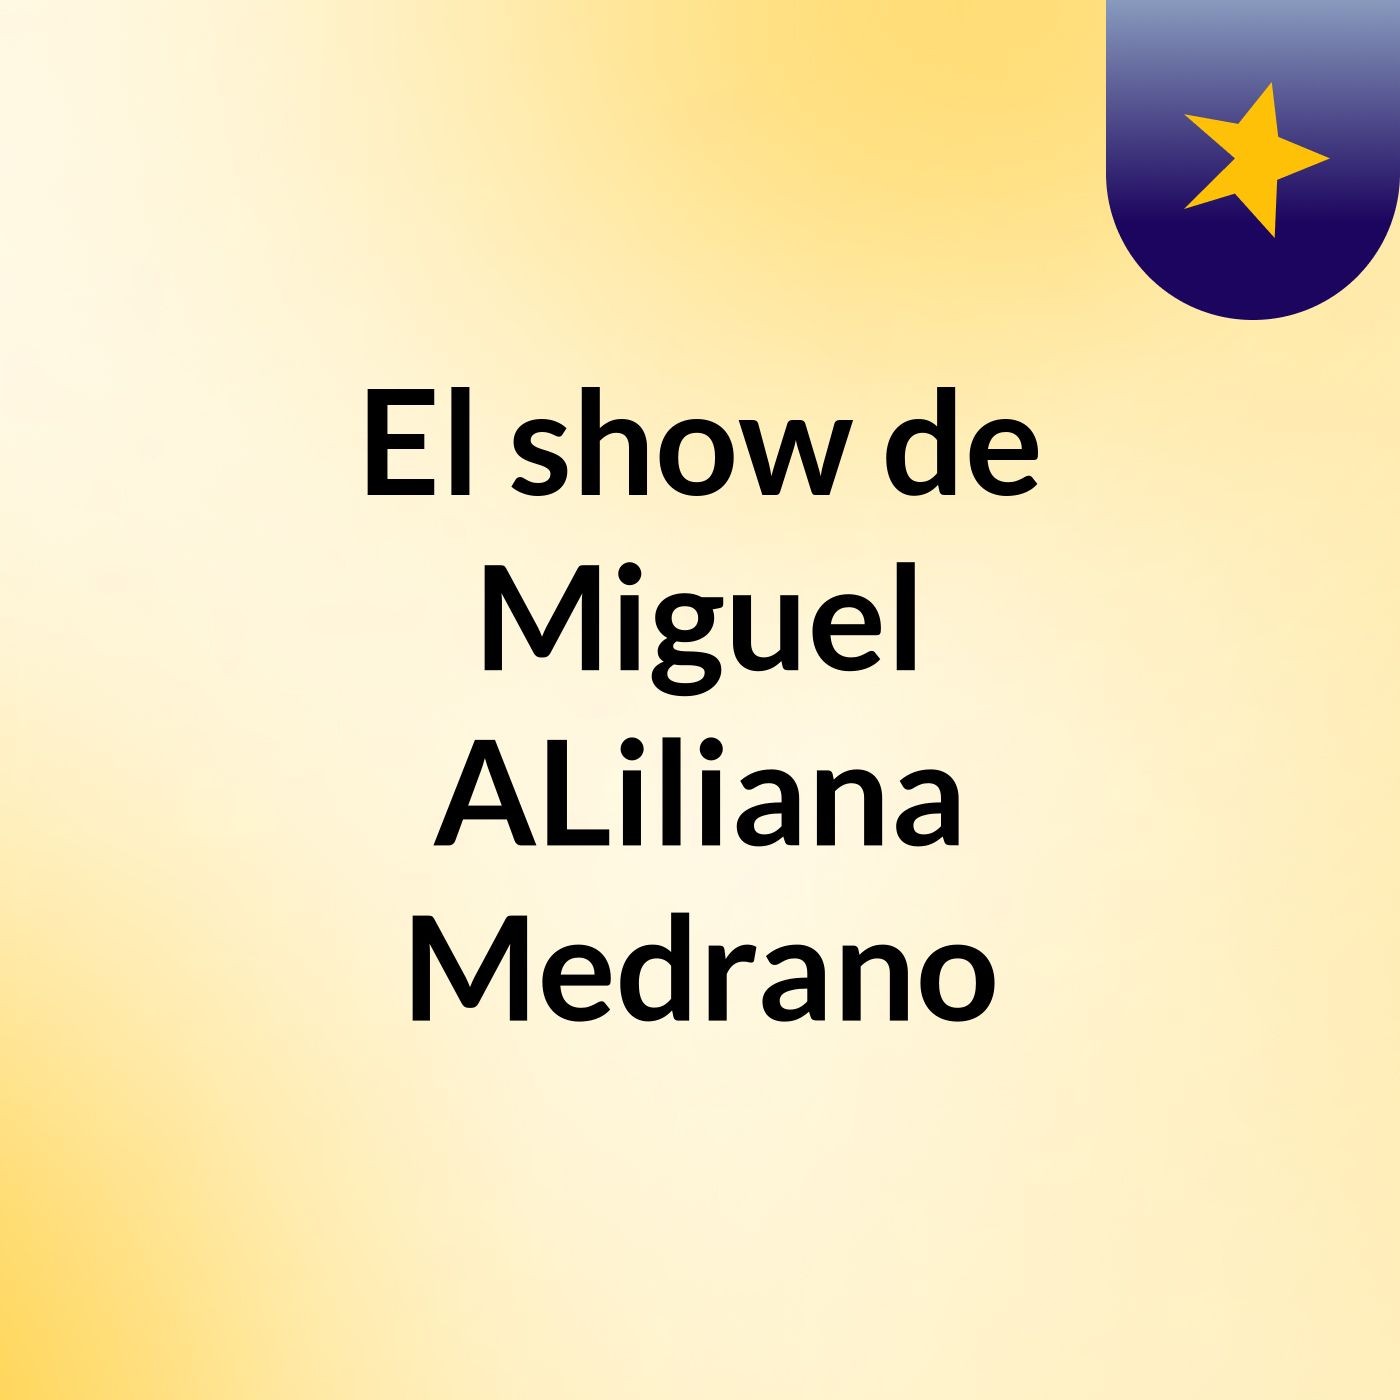 El show de Miguel ALiliana Medrano